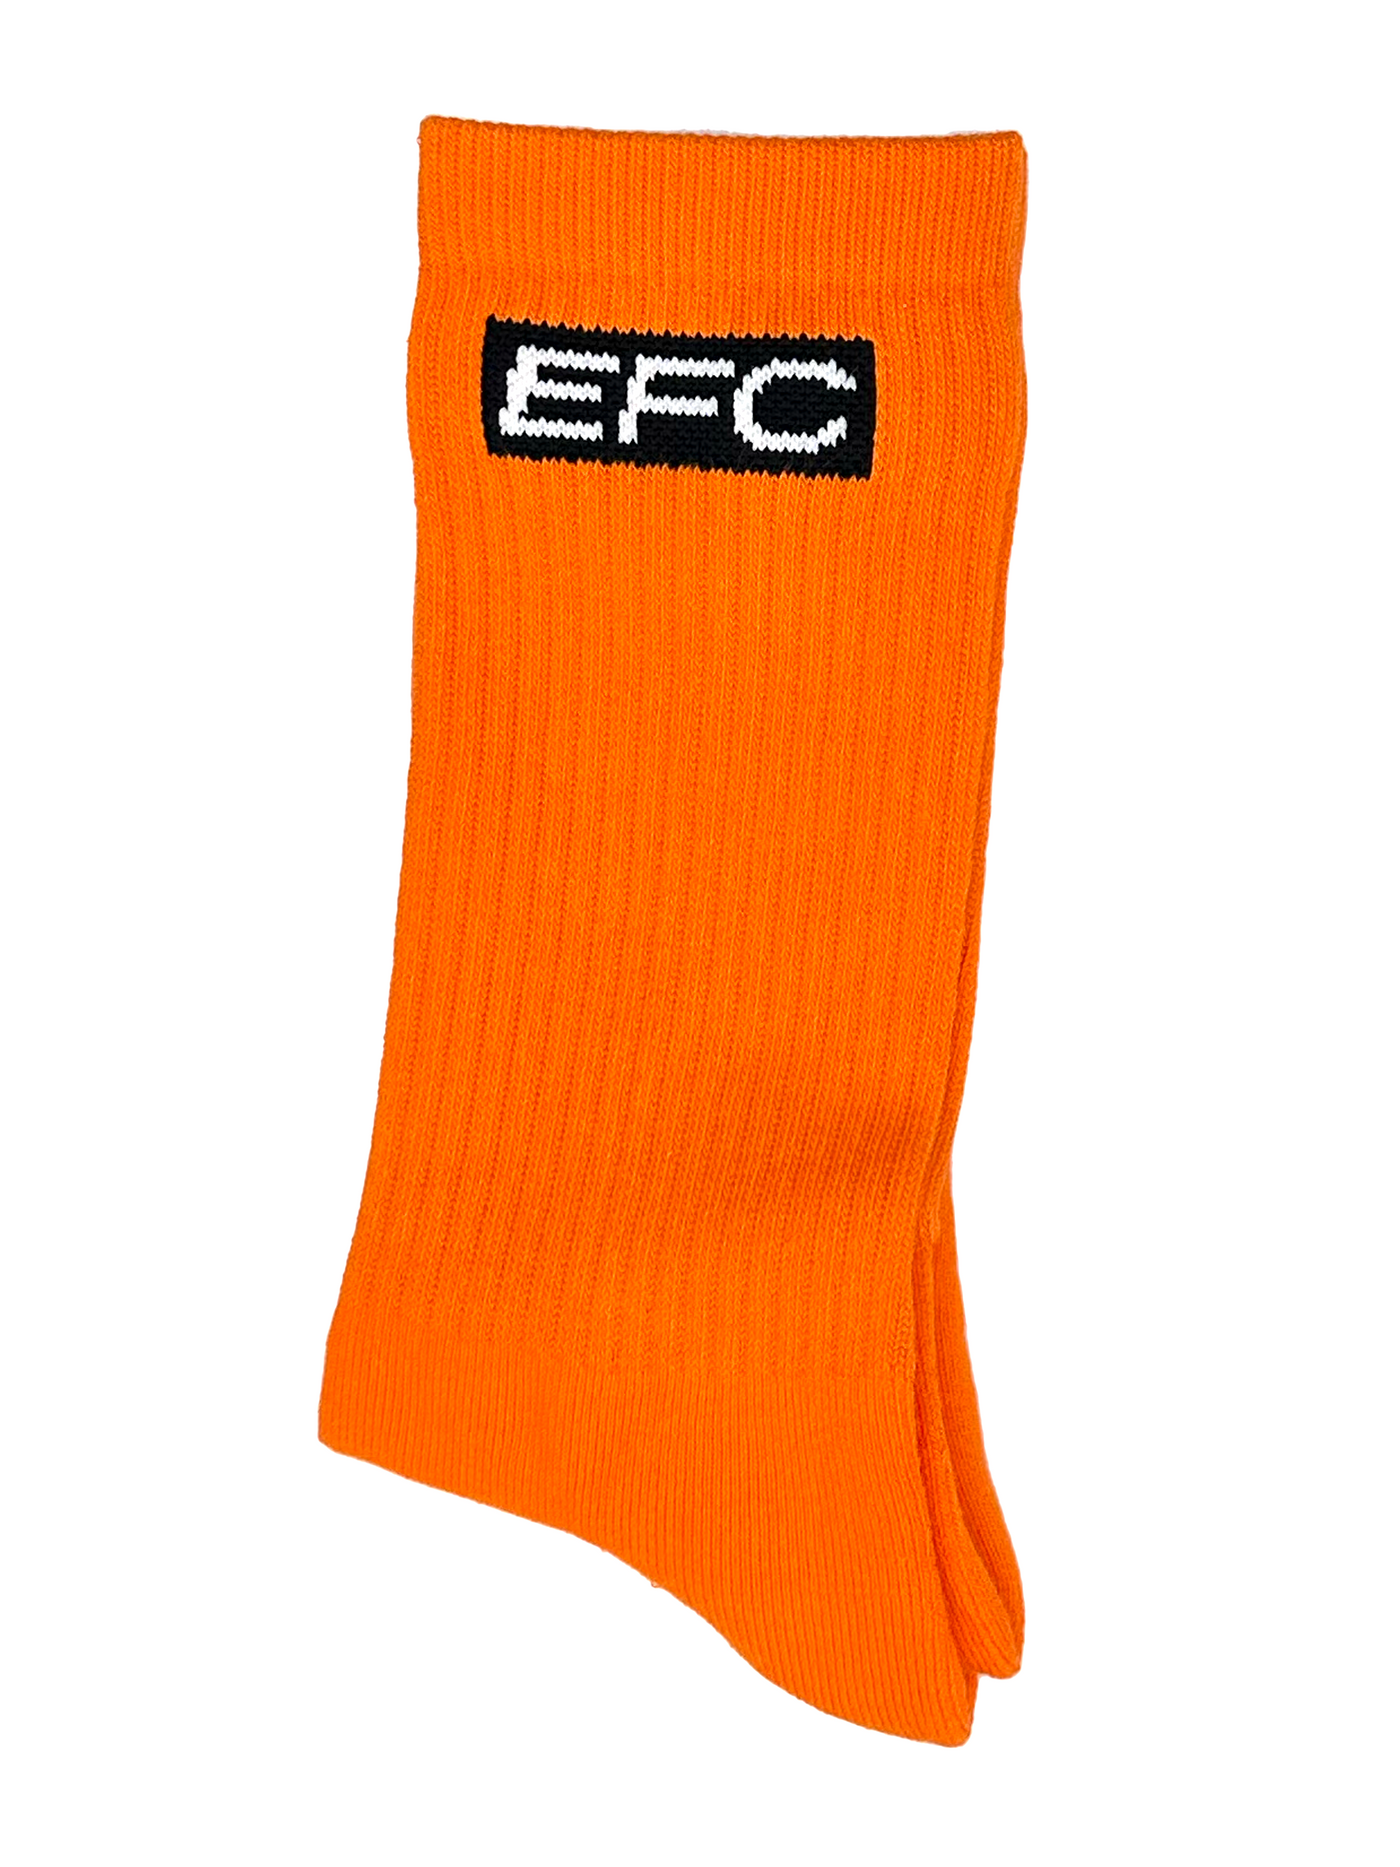 Solid Orange Socks